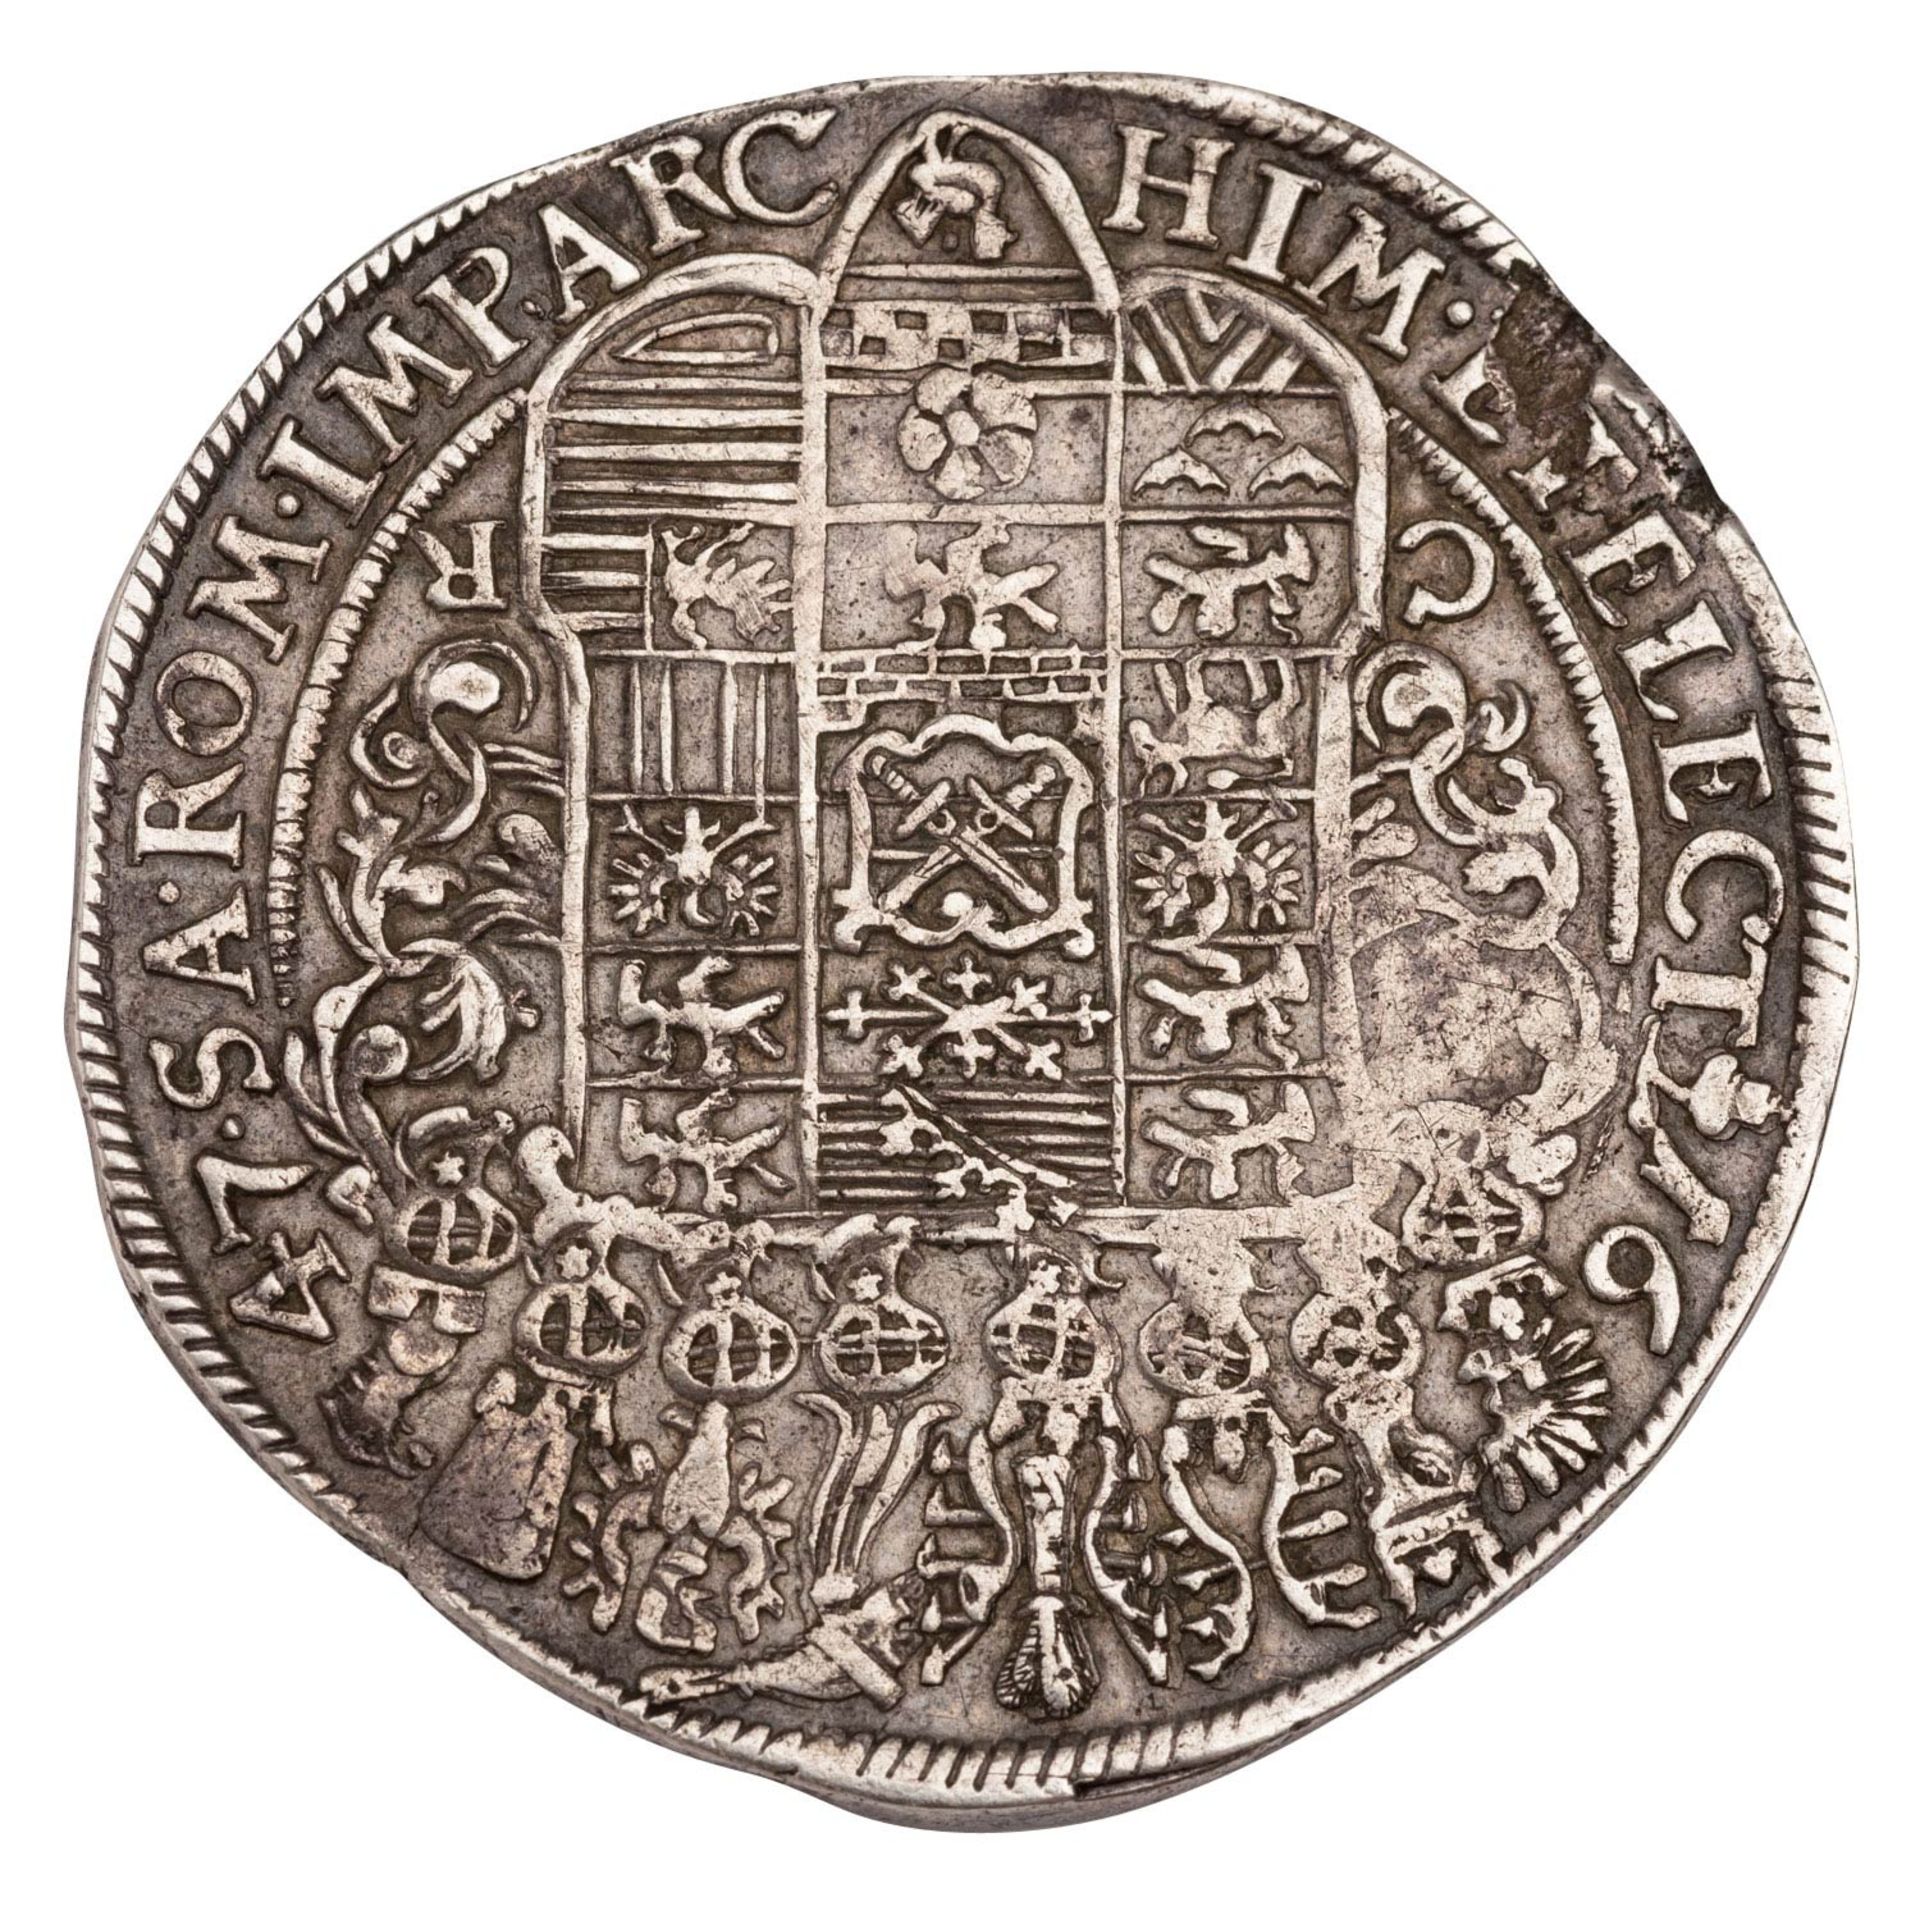 Altdeutschland, Sachsen-Albertinische Linie, Johann Georg I. Reichstaler 1647 CR - Image 2 of 2